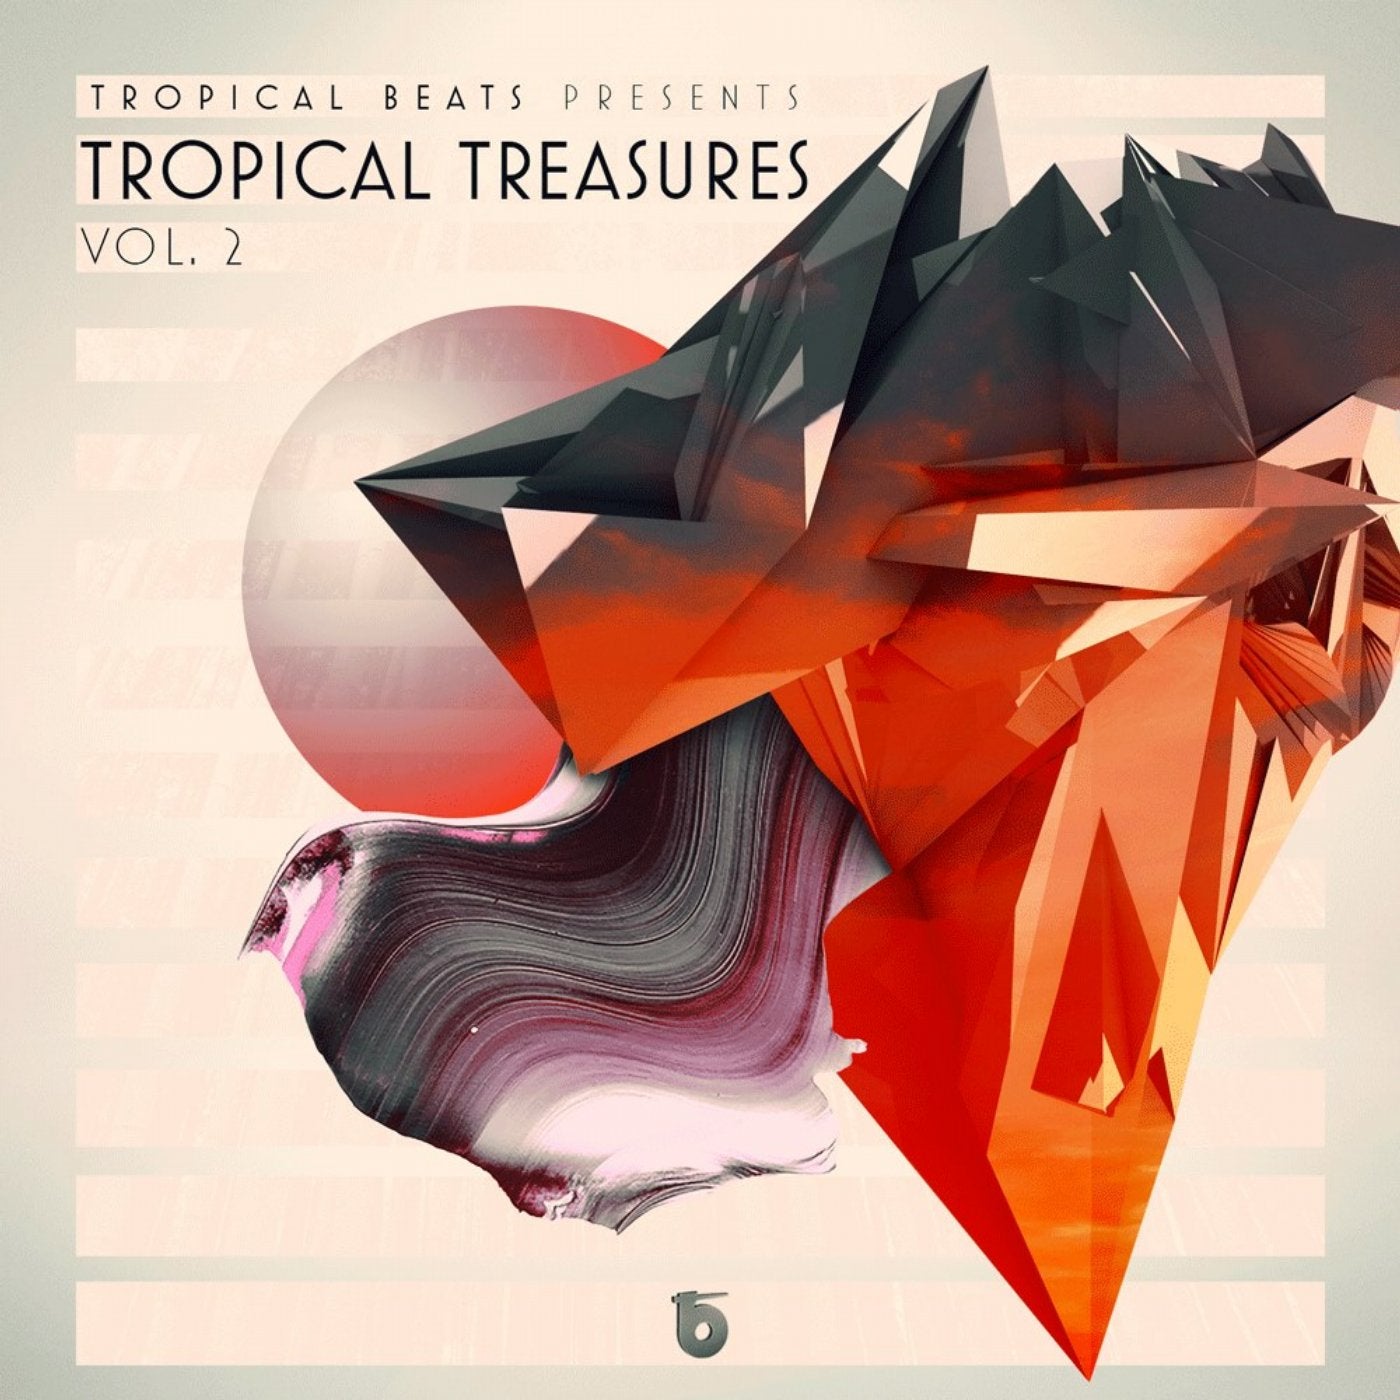 Tropical Treasures Vol. 2